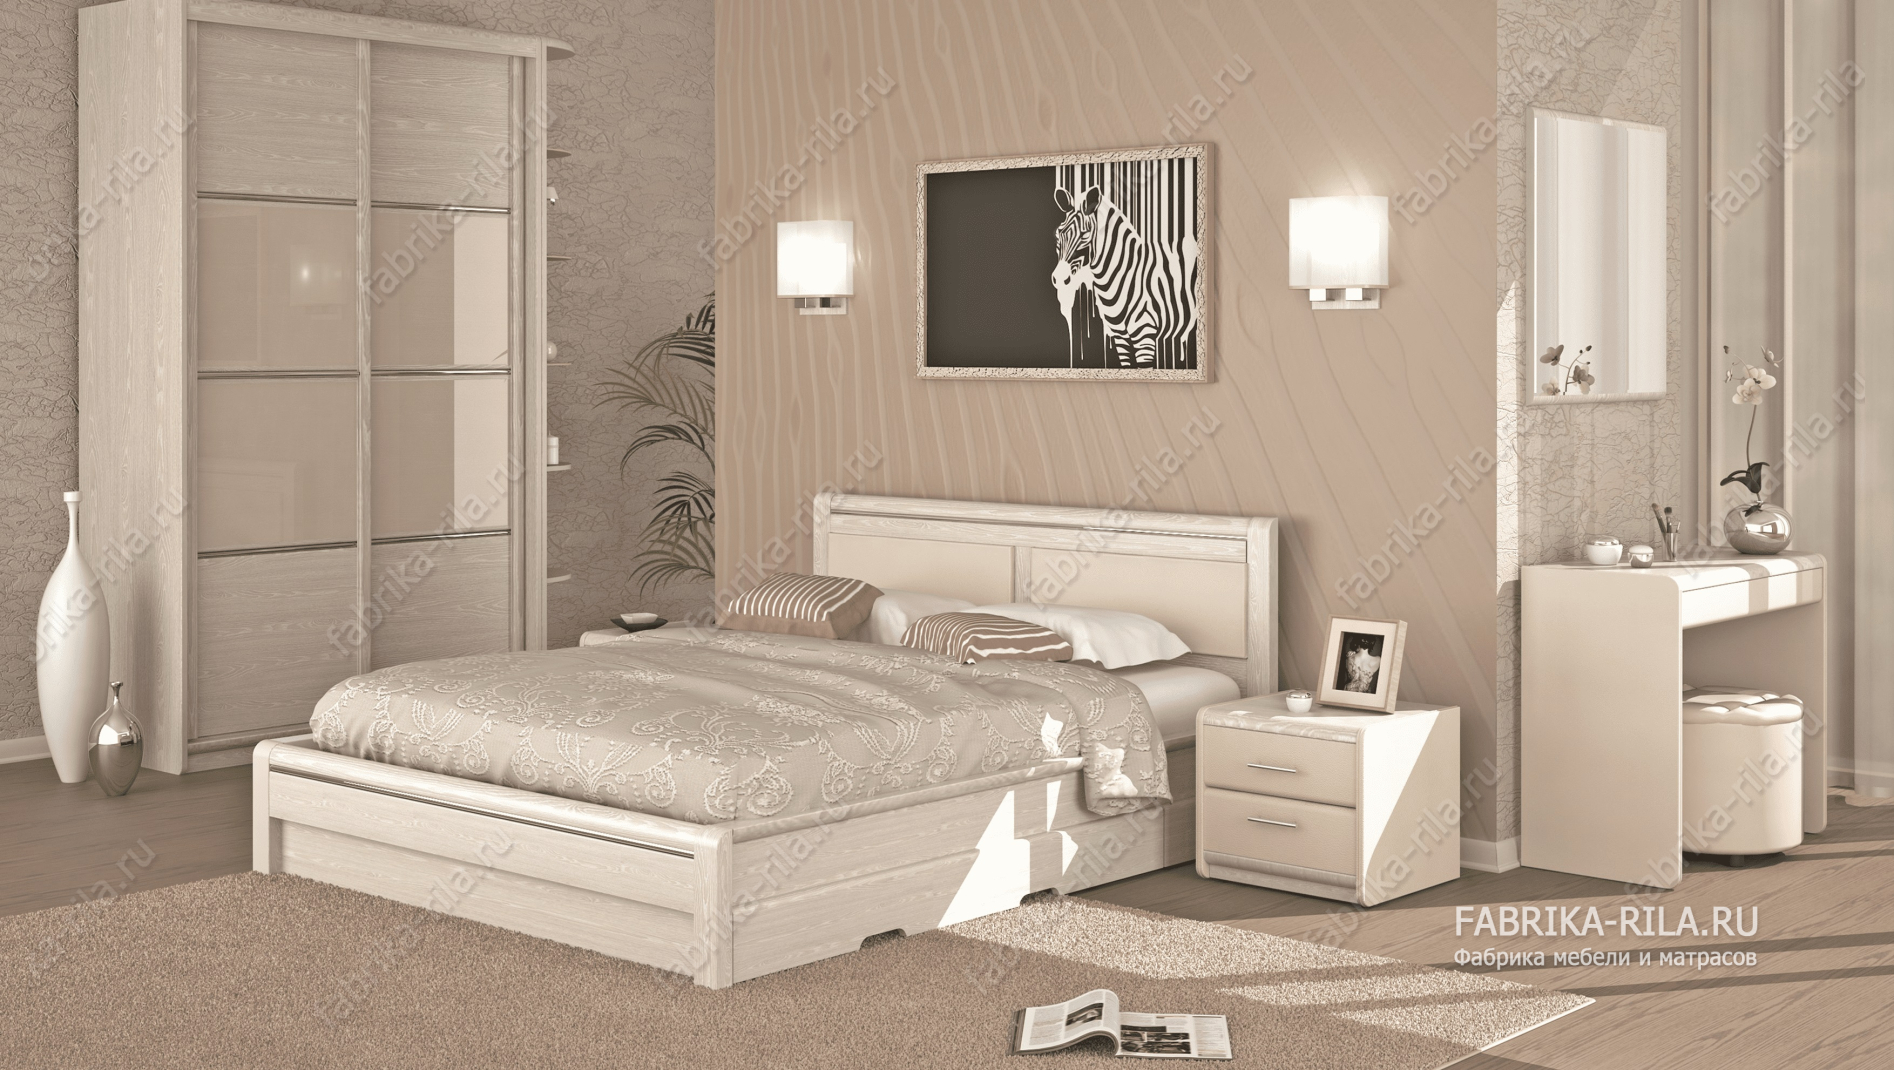 Кровать Okaeri 5 — 90x200 см. из сосны